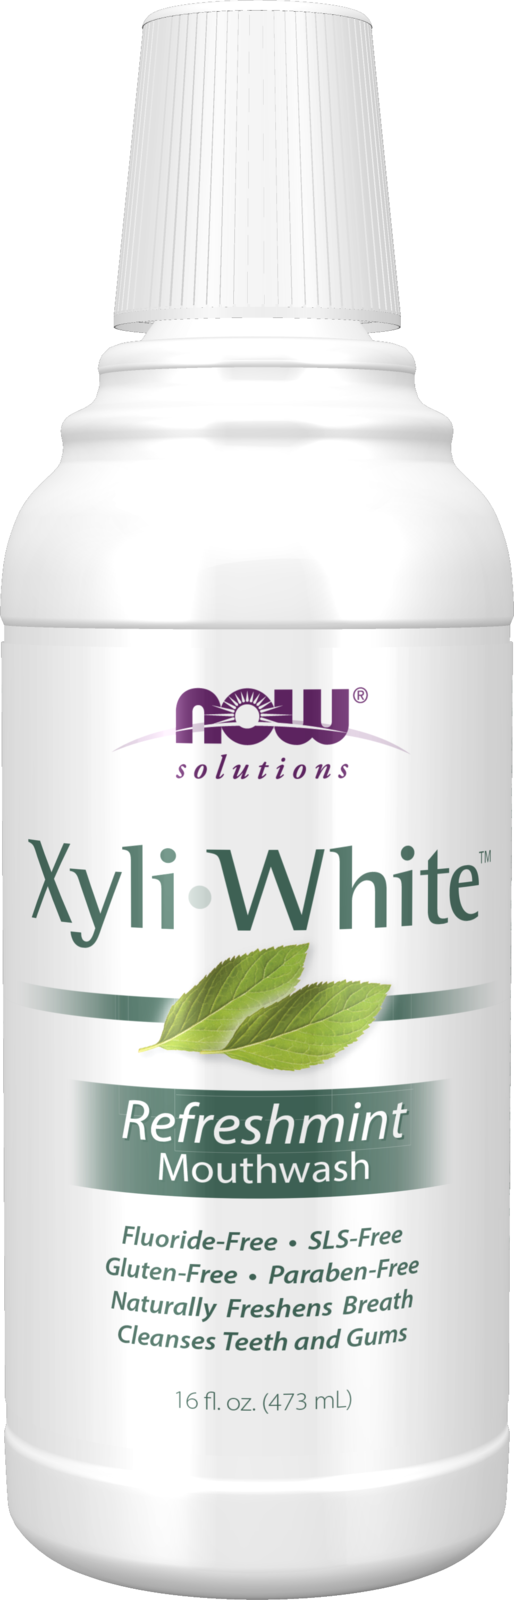 XyliWhite™ Refreshmint Mouthwash